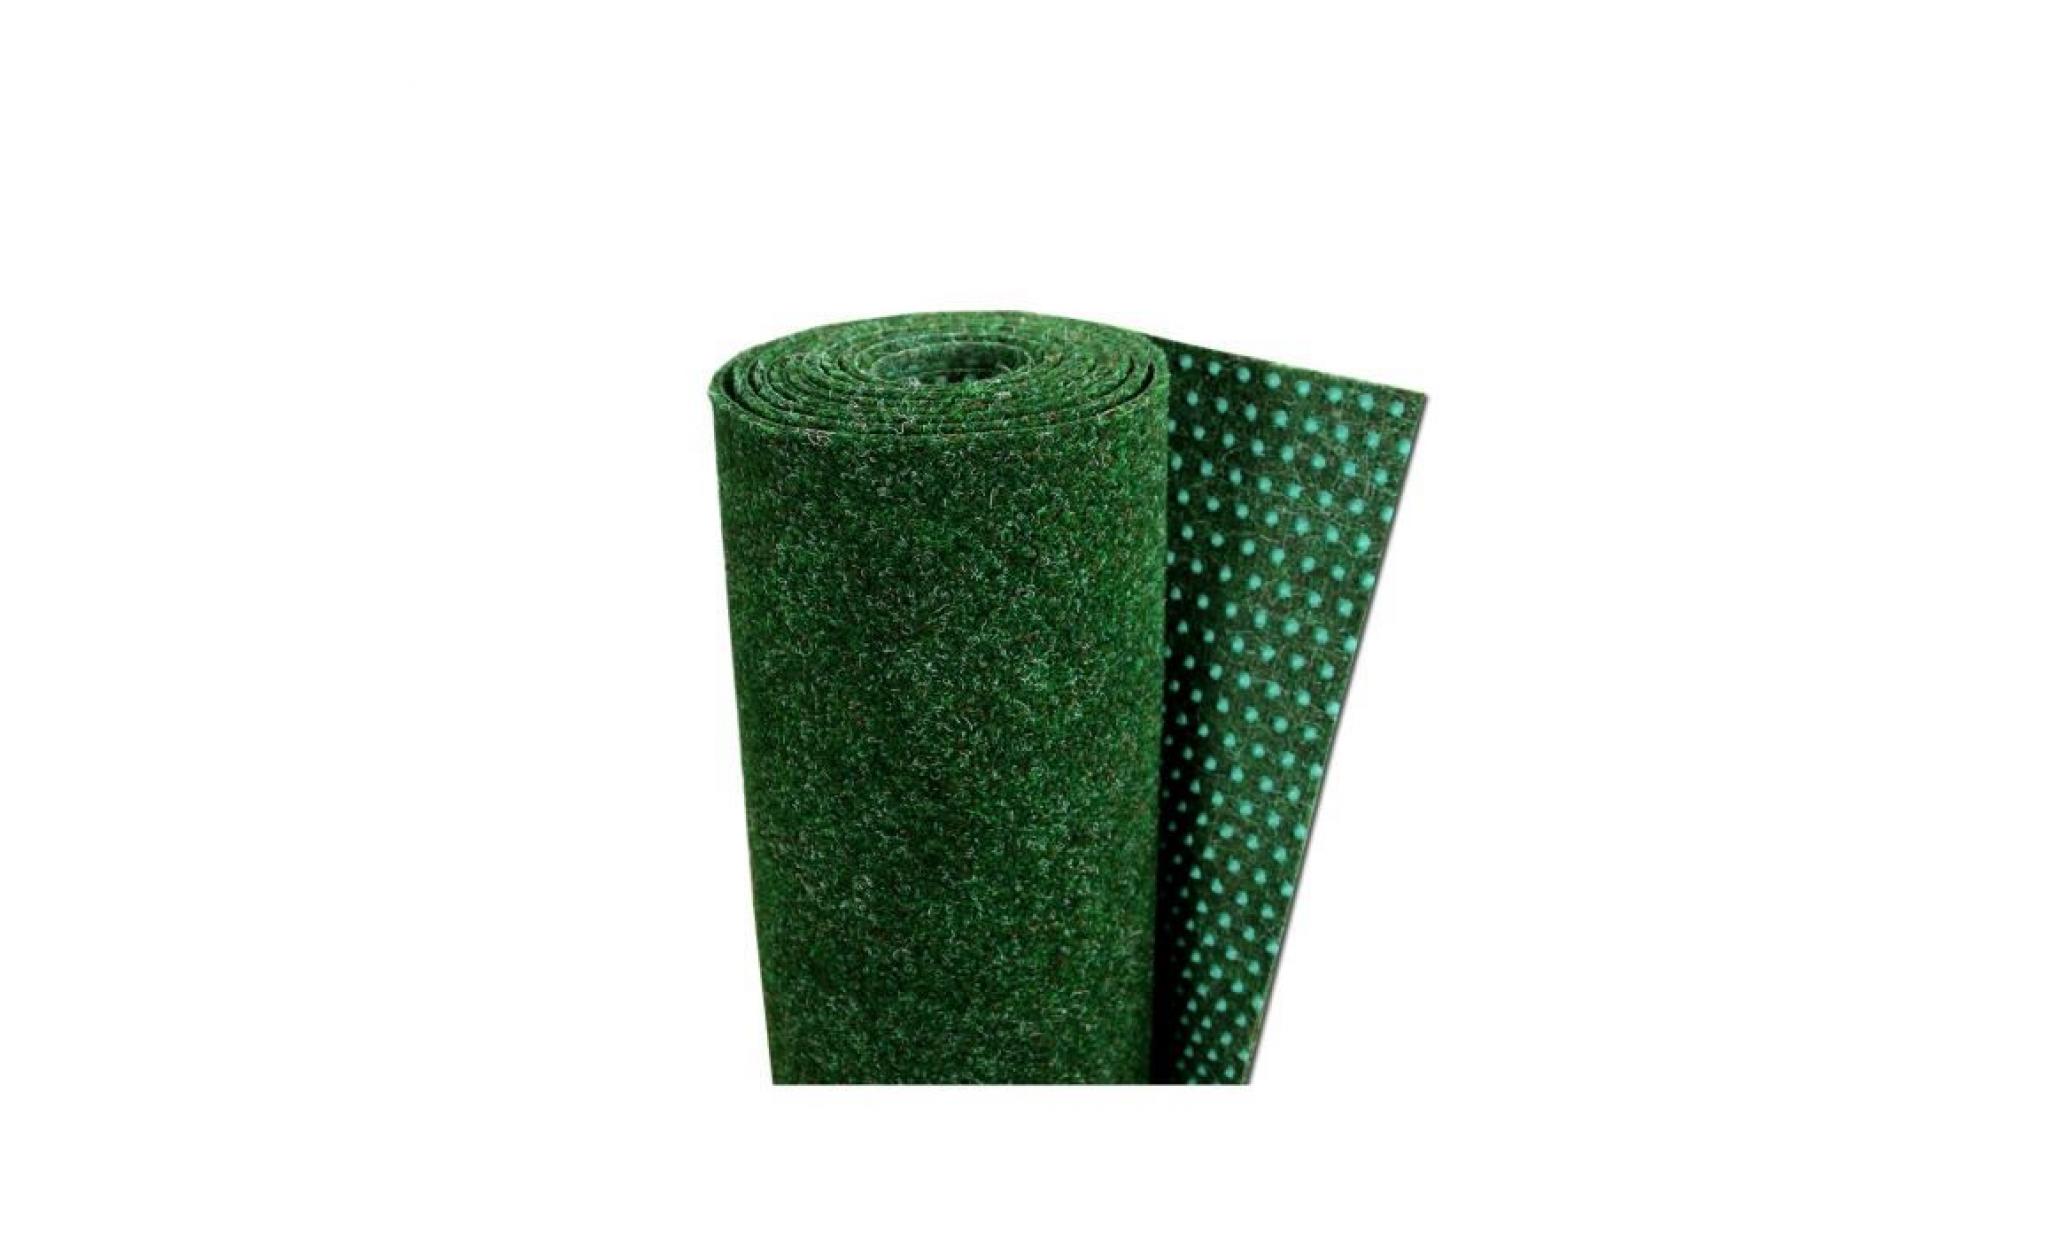 kingston   tapis type gazon artificiel – pour jardin, terrasse, balcon   vert mélangé [200x450 cm] pas cher